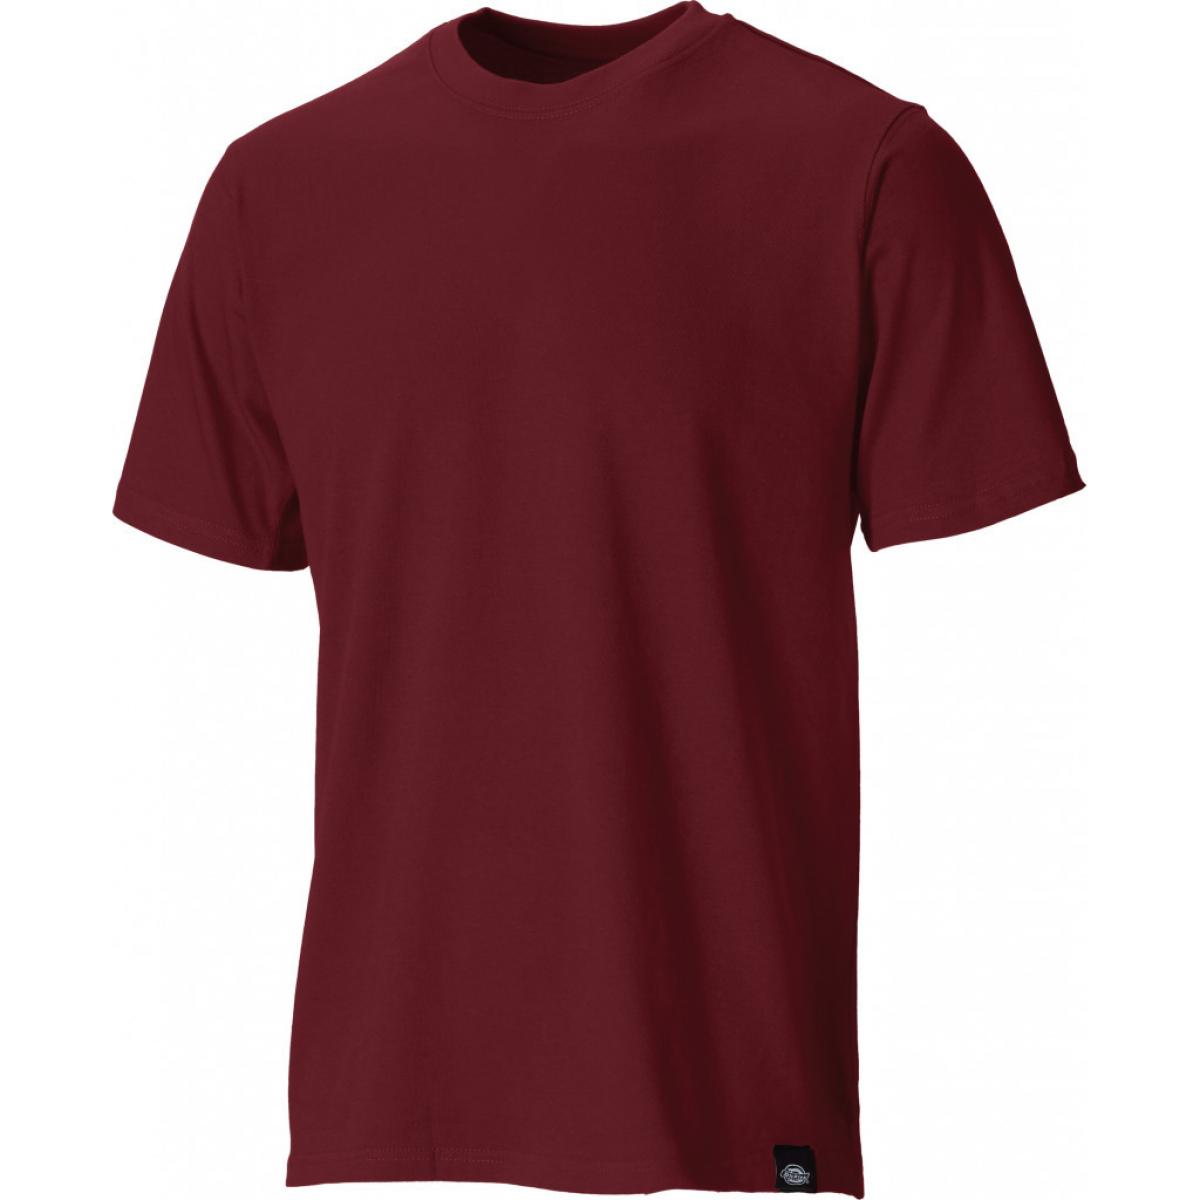 Hersteller: Dickies Herstellernummer: SH34225 Artikelbezeichnung: T-Shirt Farbe: Weinrot